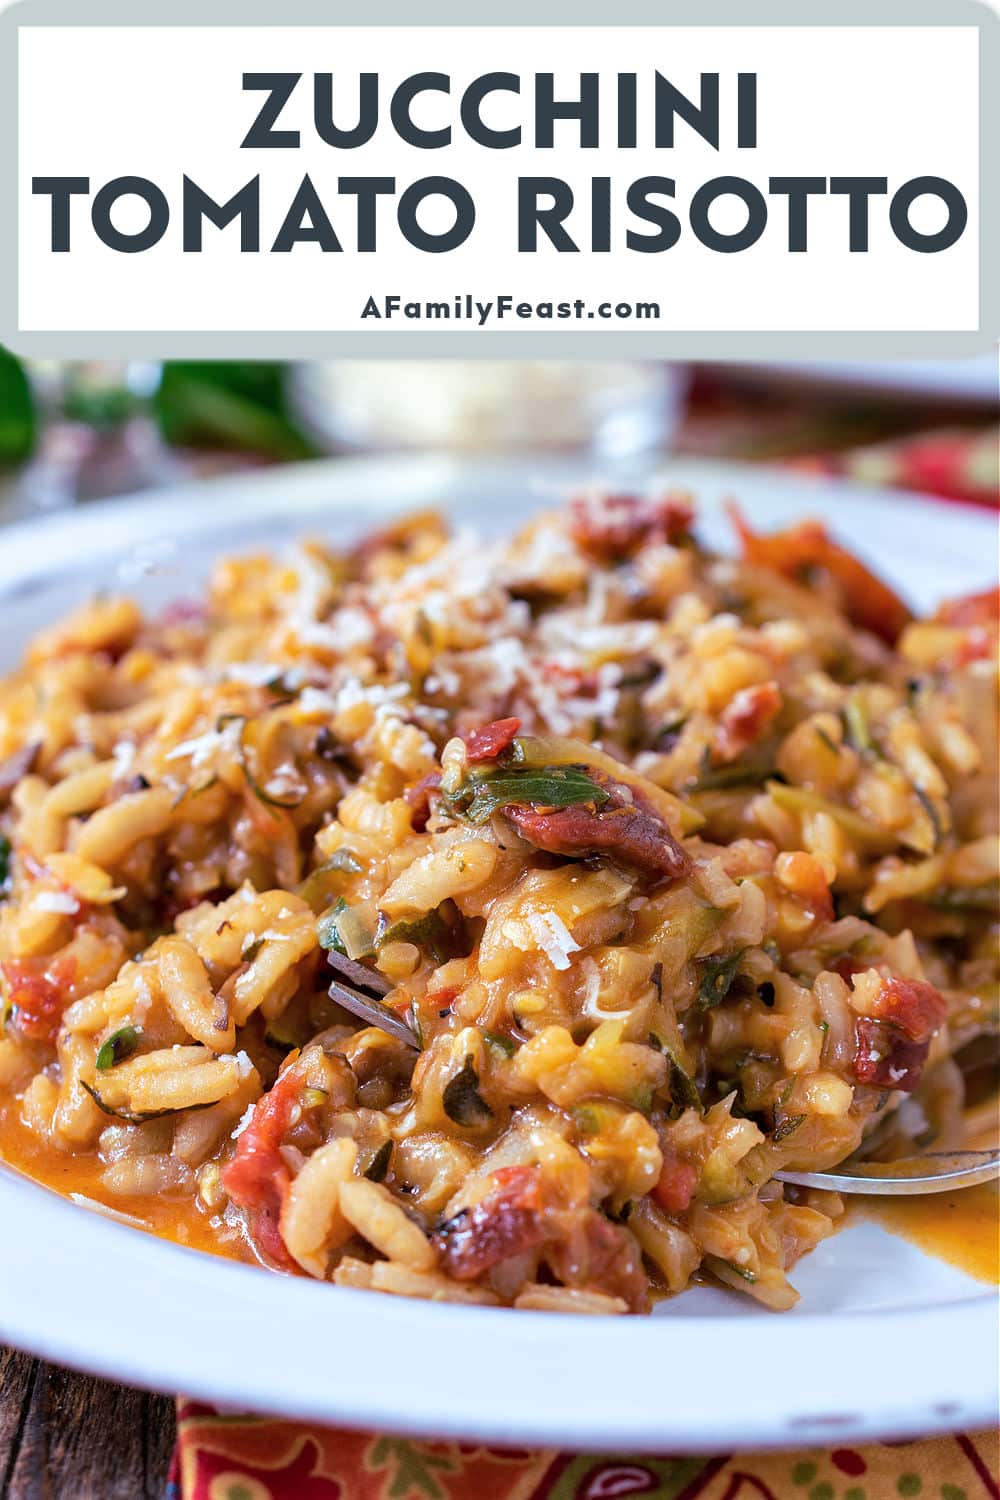 Zucchini Tomato Risotto - A Family Feast